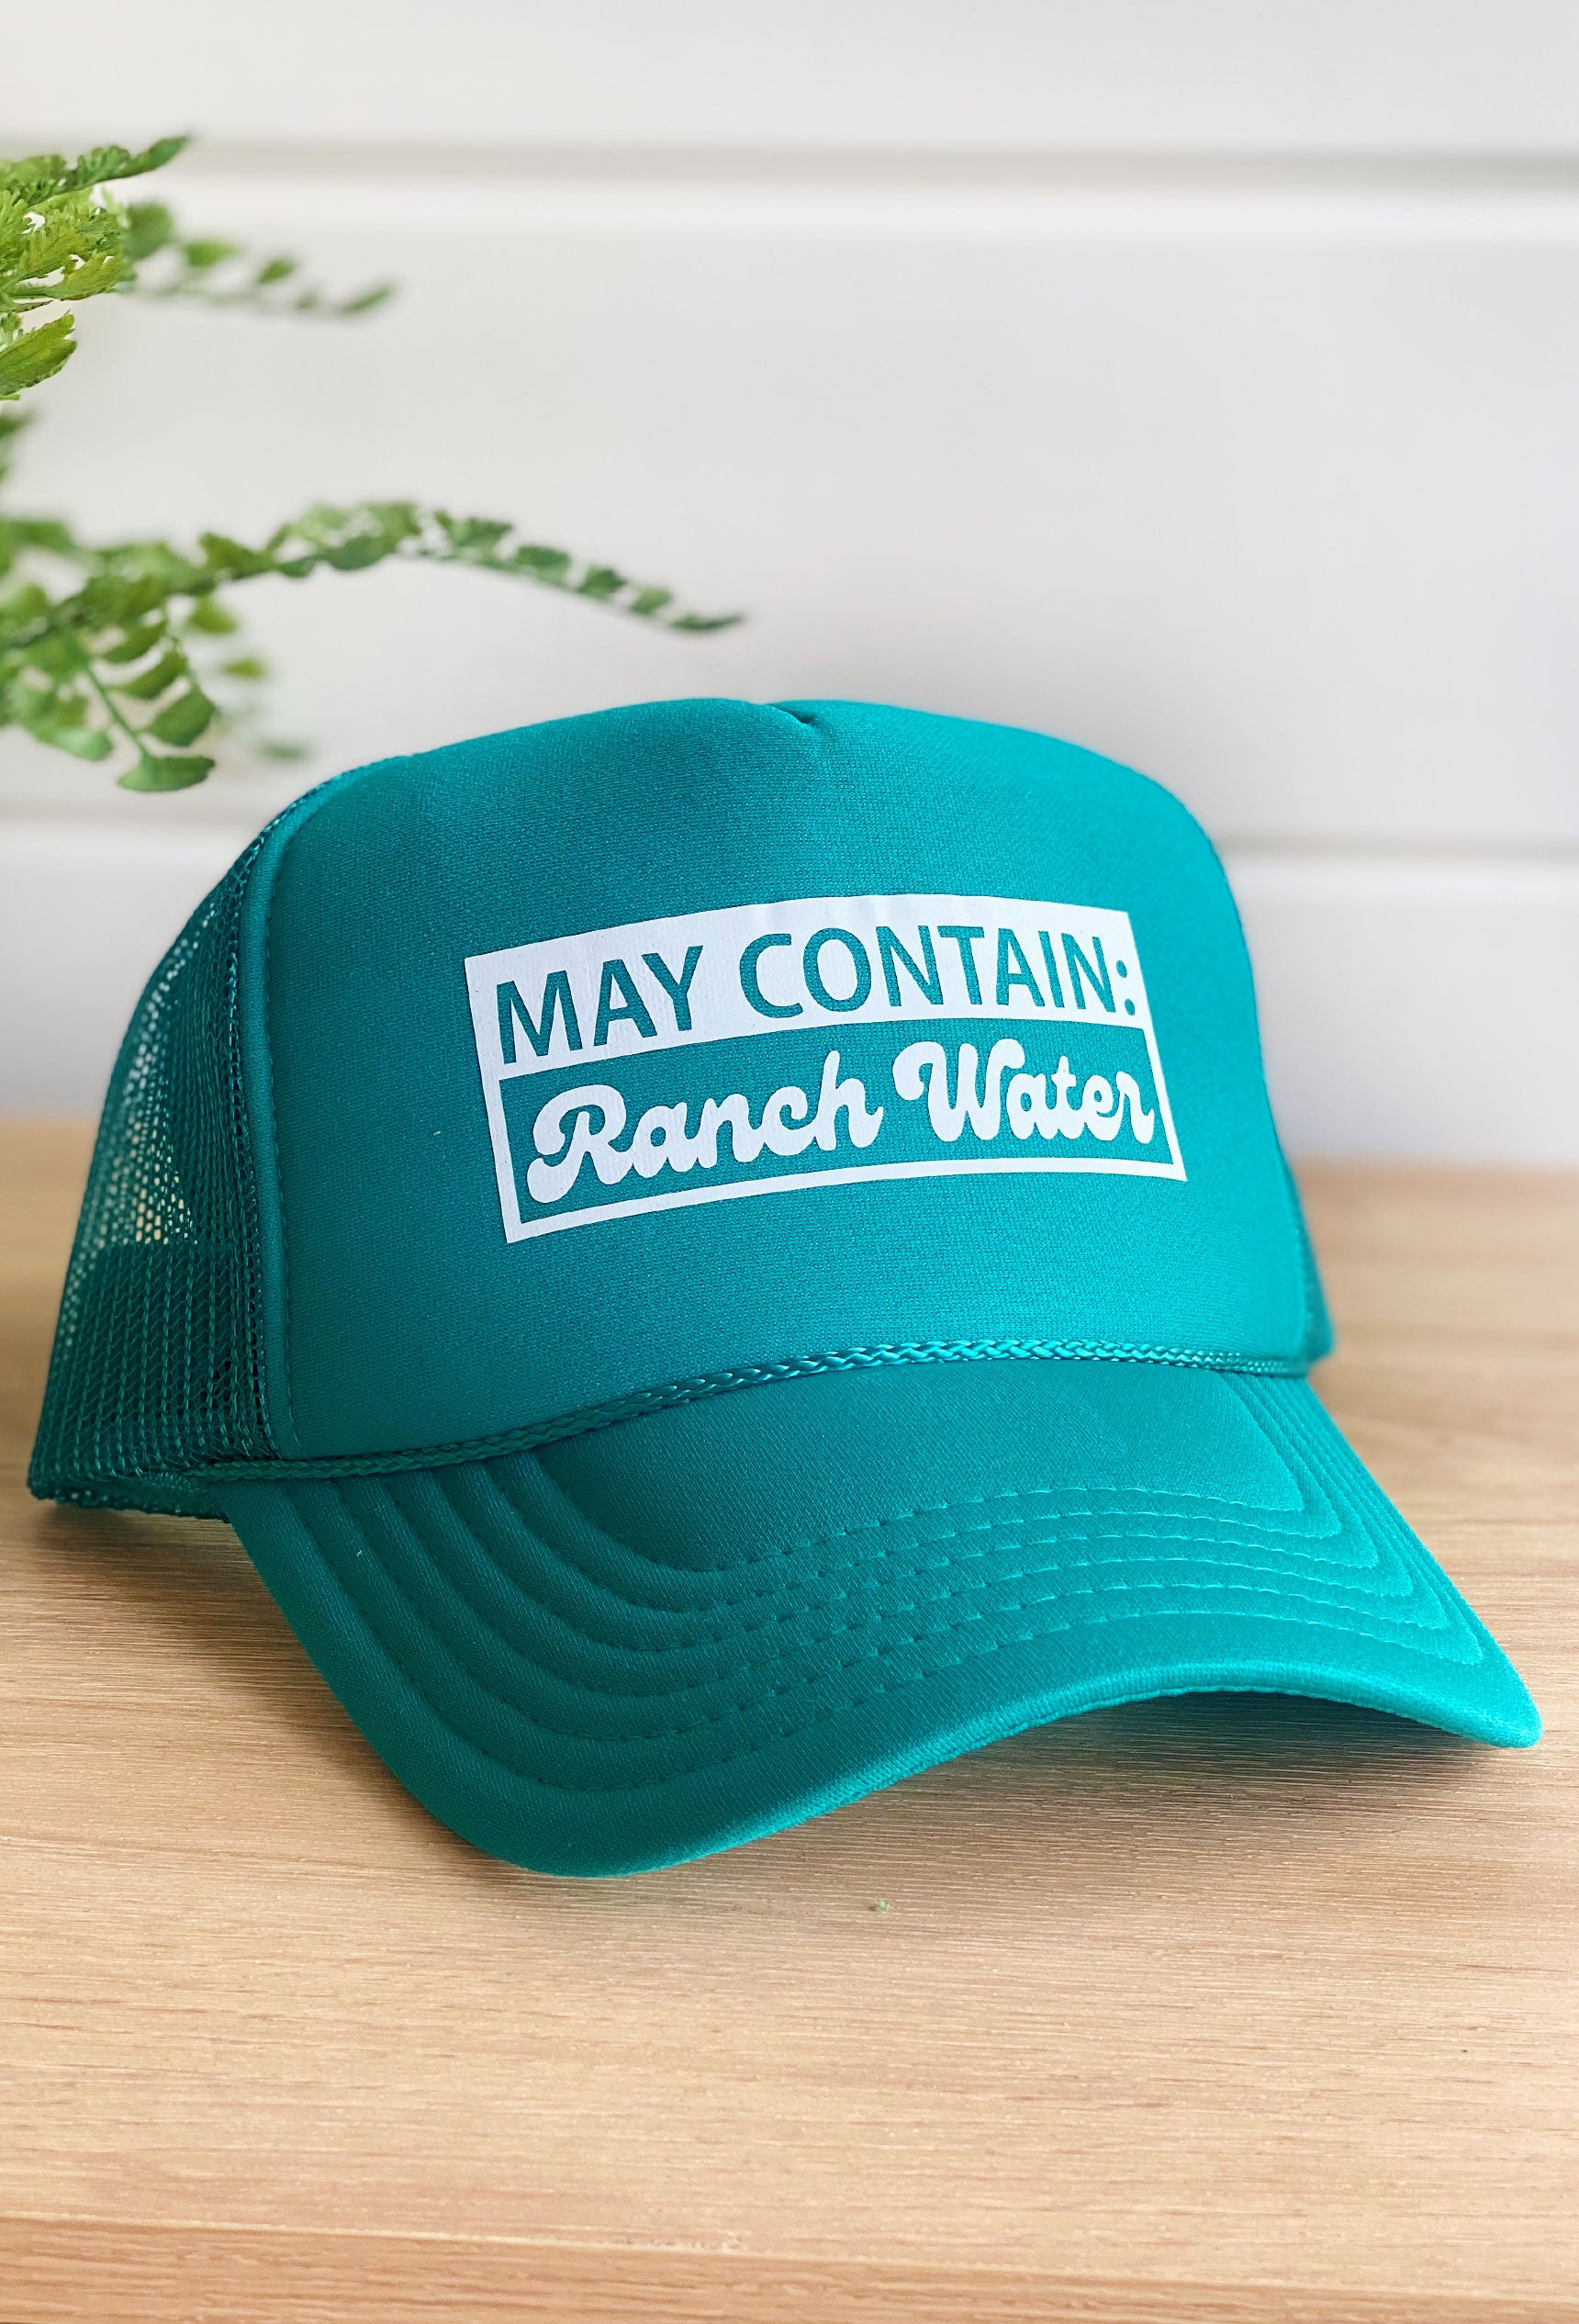 Ranch Water Trucker Hat, Groovy's, Ranch Water